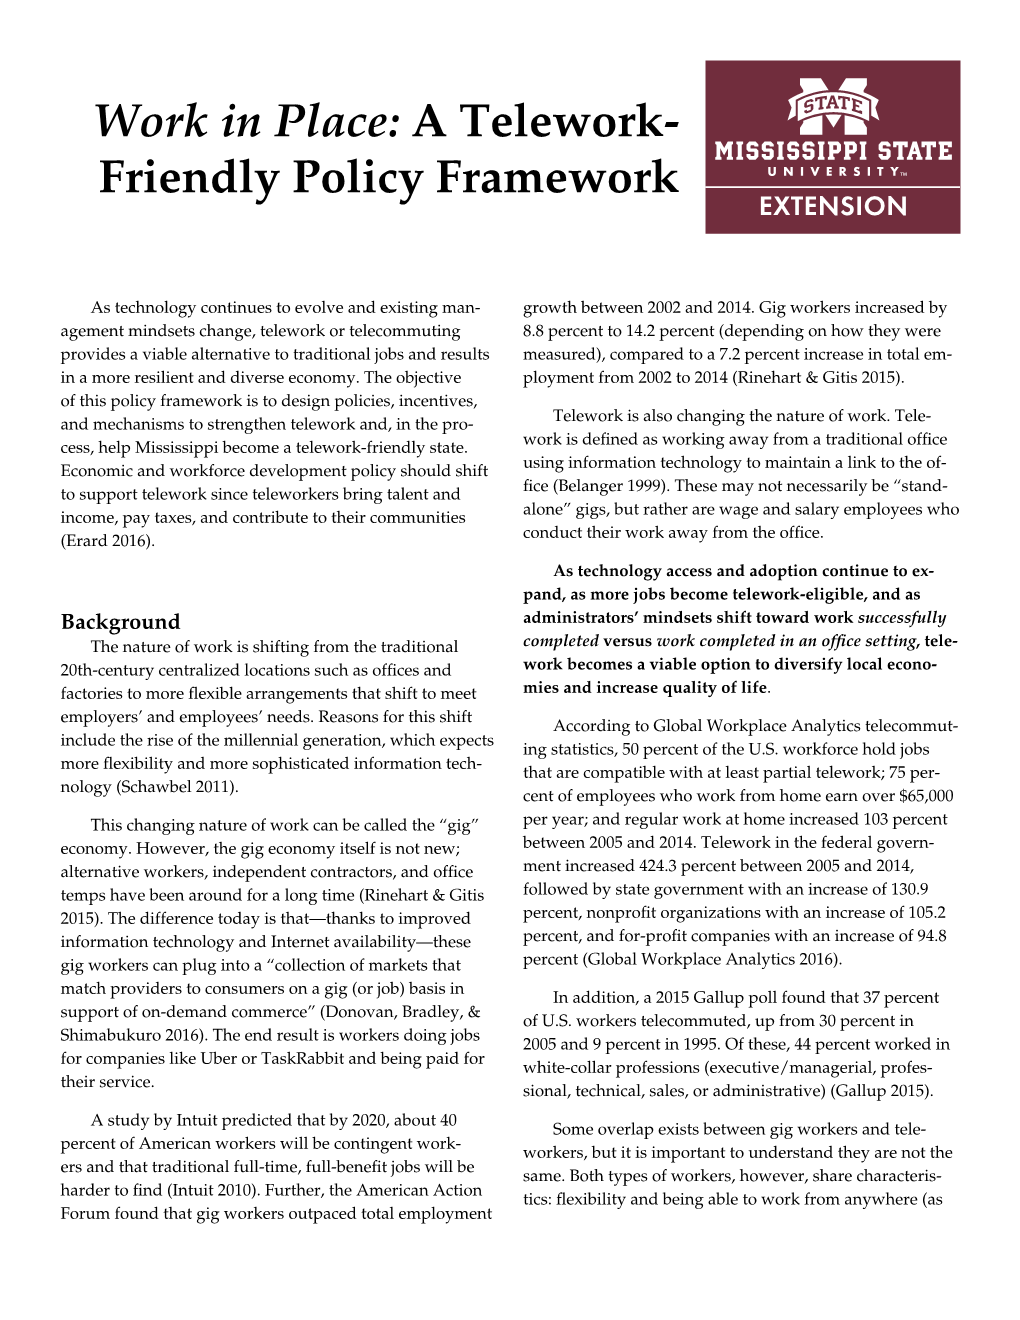 A Telework-Friendly Policy Framework